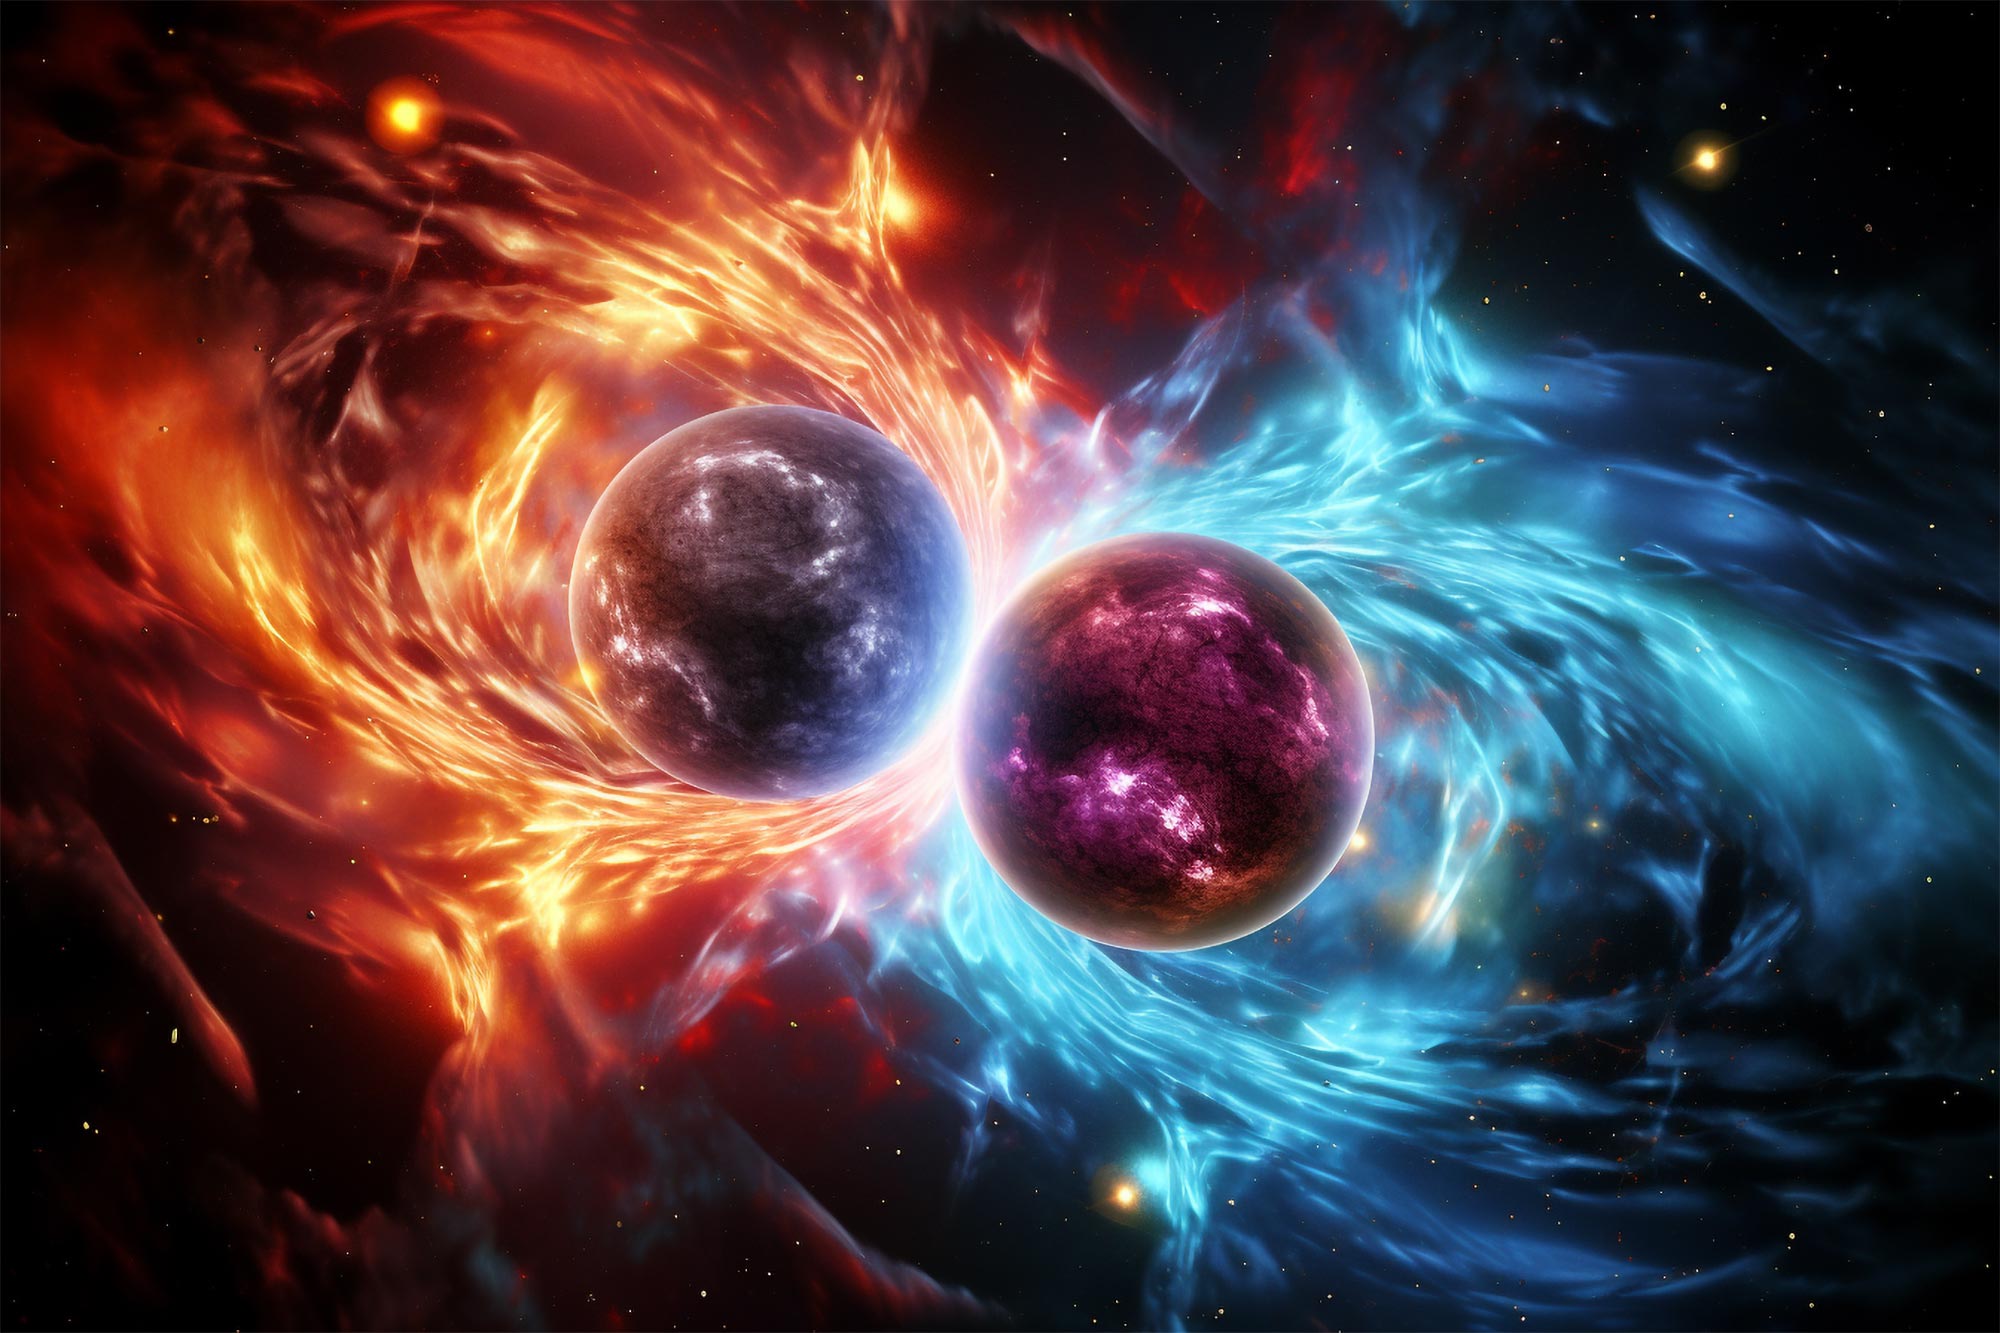 Tabrakan bintang neutron menjelaskan perluasan alam semesta